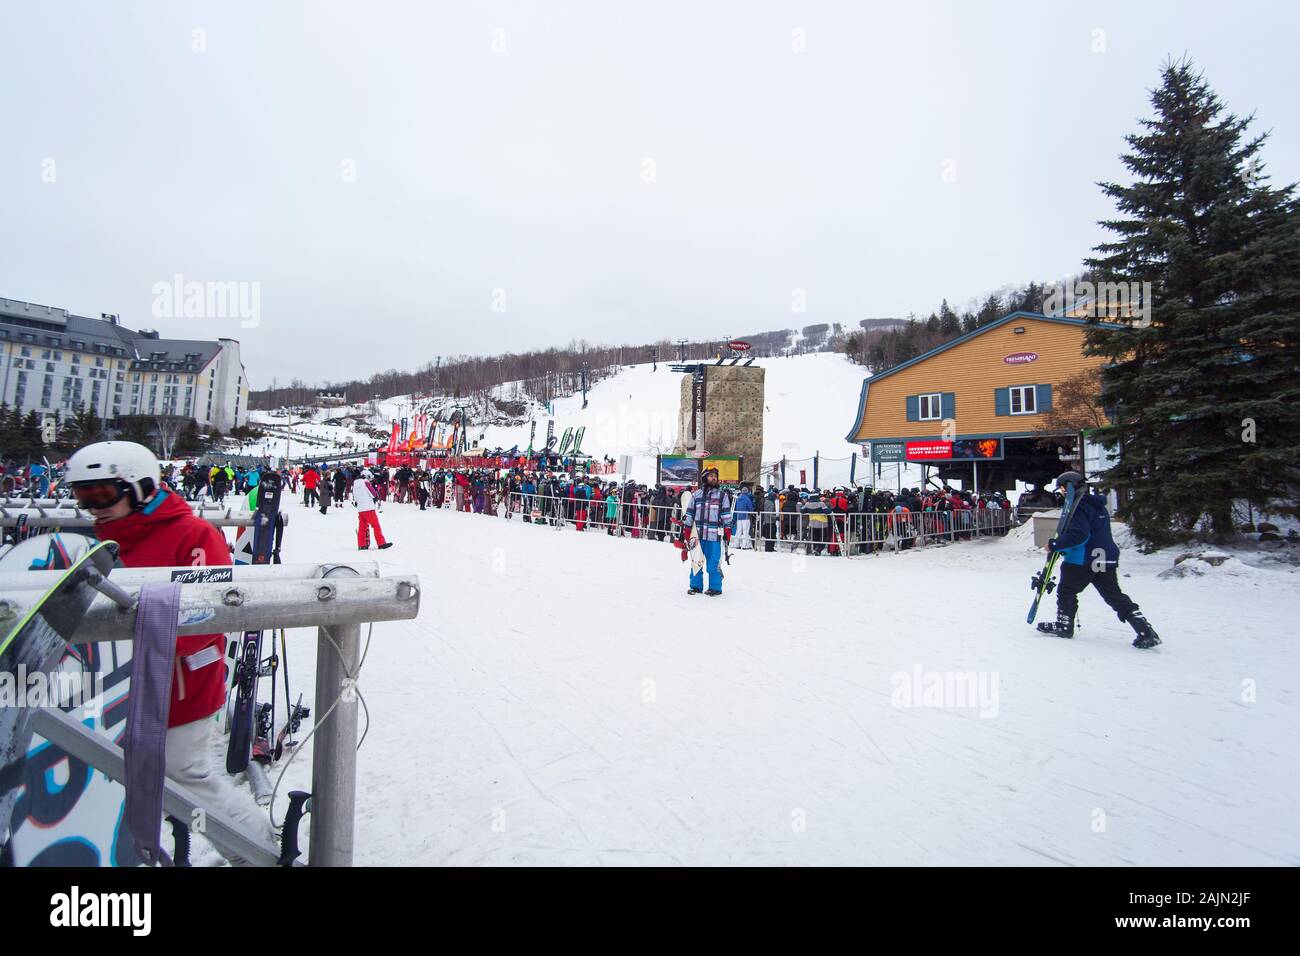 Mont Tremblant ski resort in winter Stock Photo